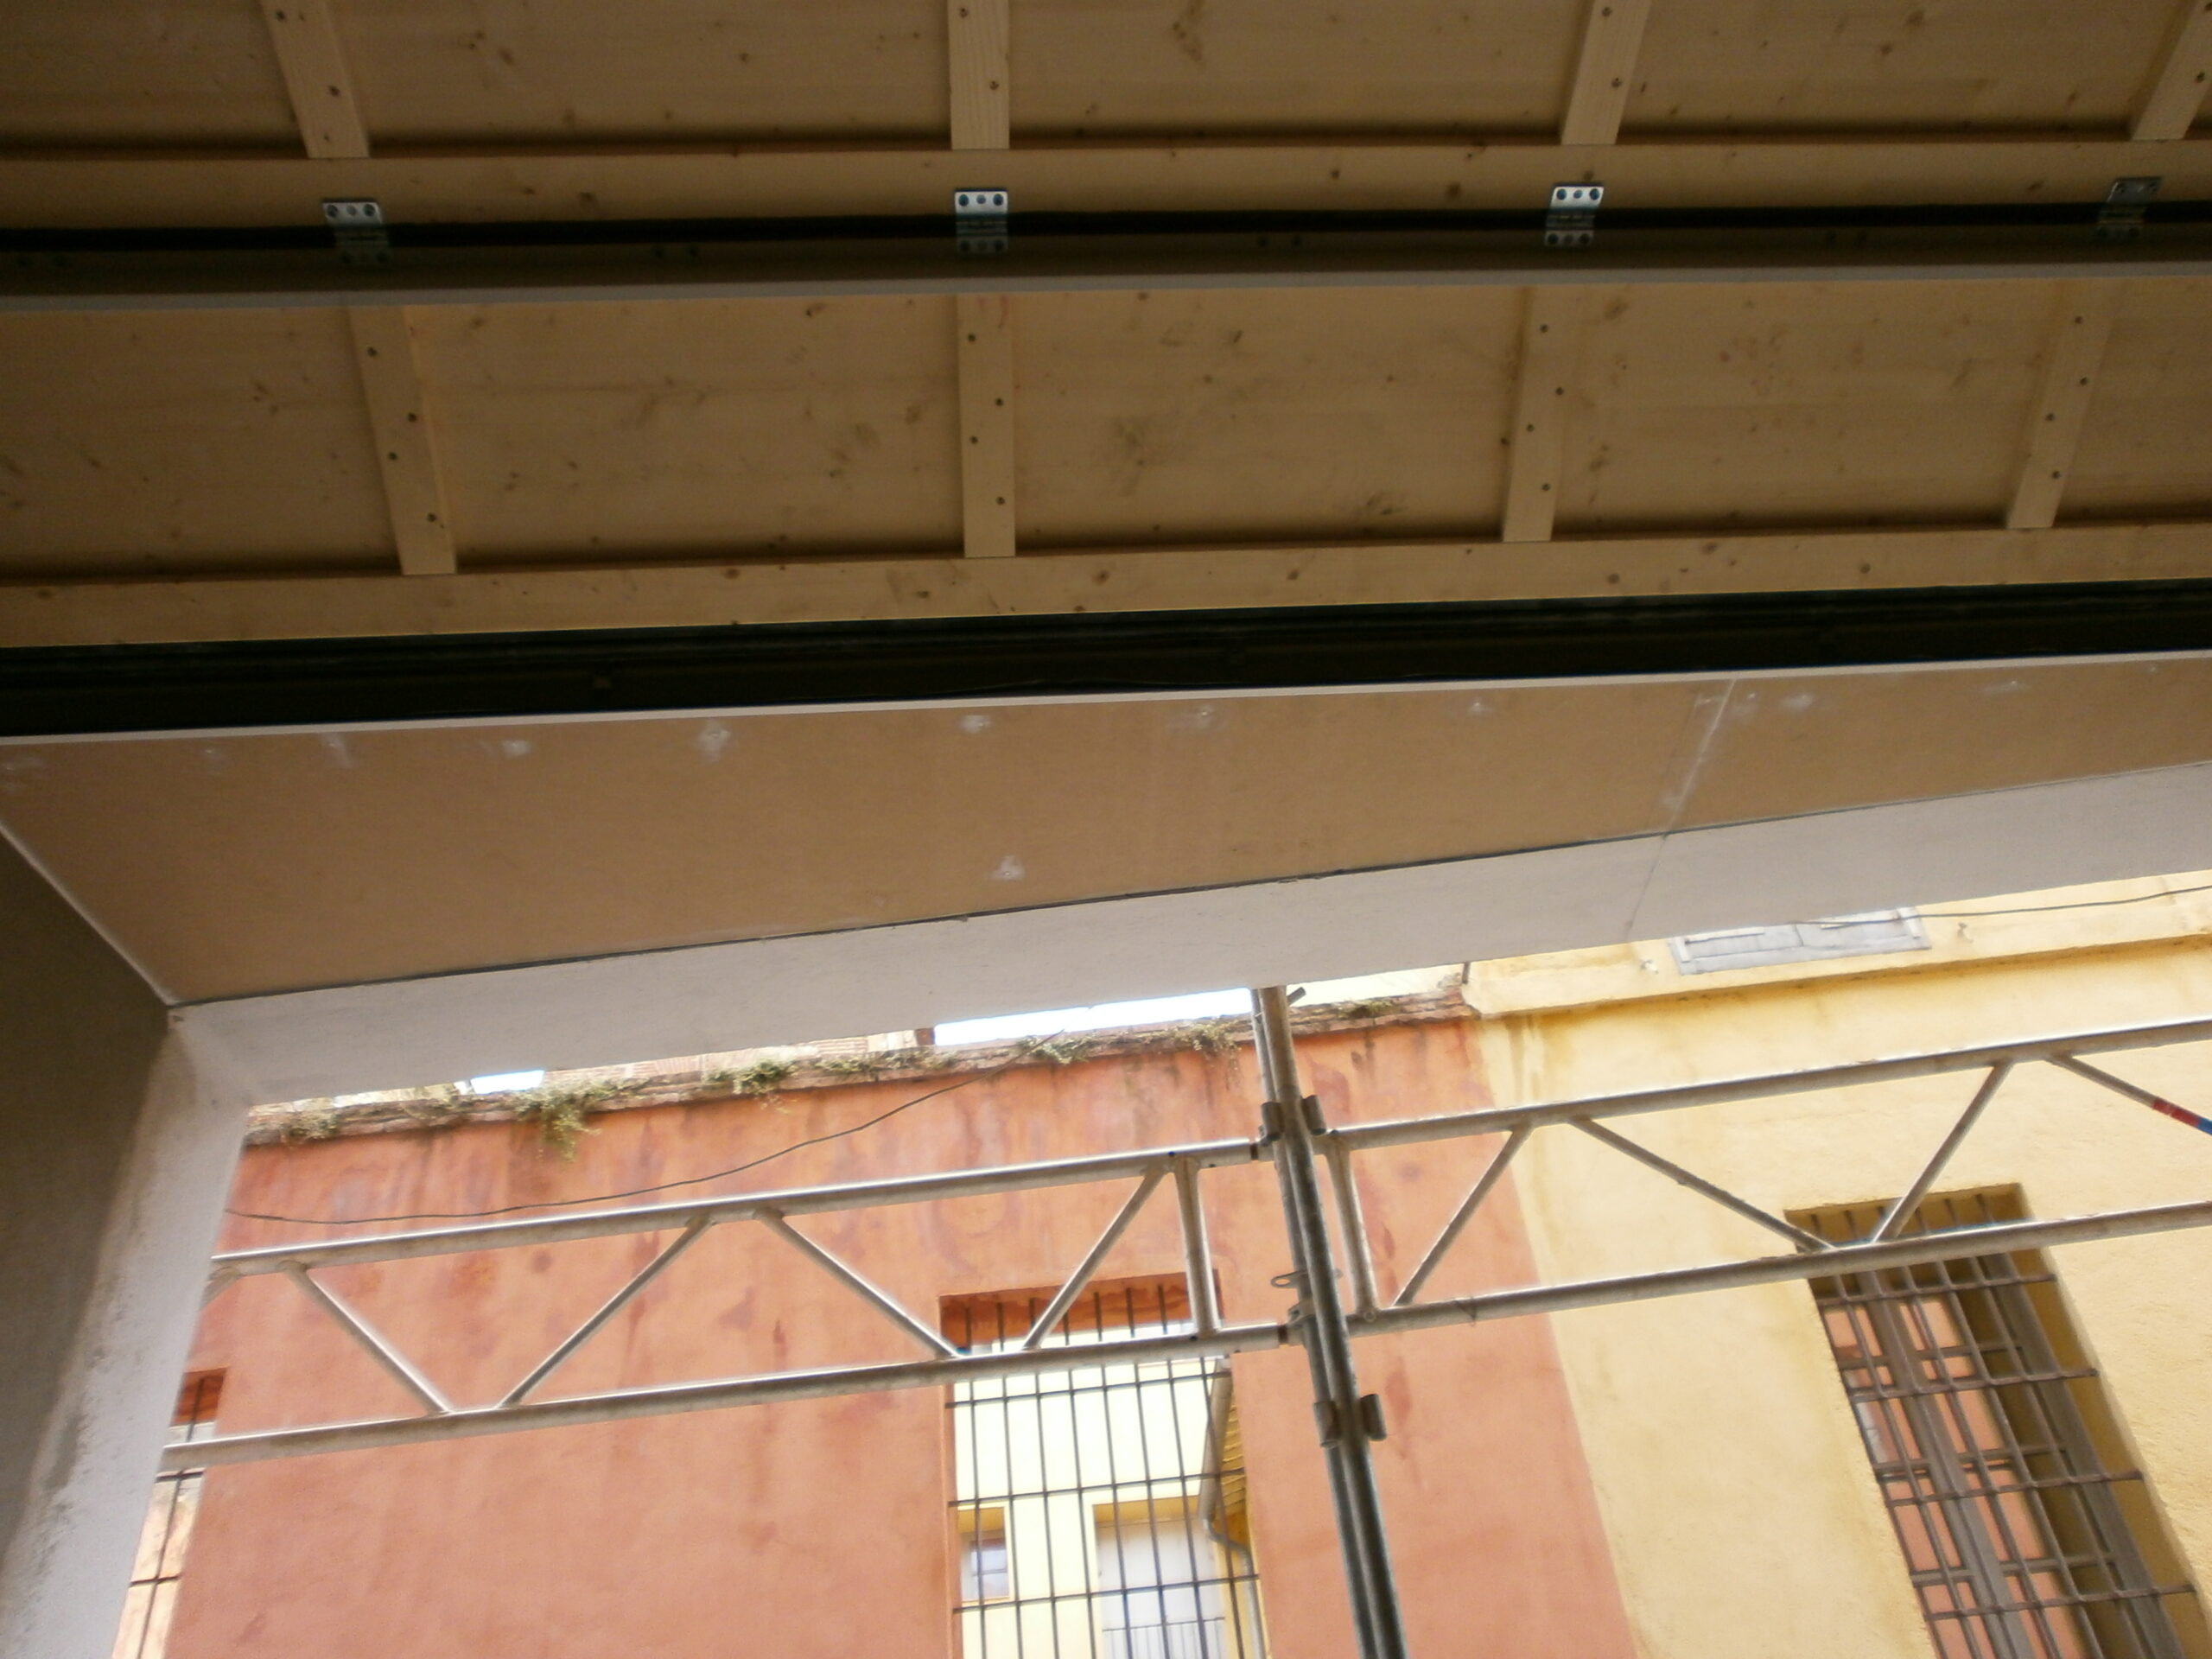 renovation-renov-tec-perpignan-pyrénées-orientales-66-travaux-appartemment-locaux-maison-couverture-maçonnerie-plomberie-peinture-menuiserie-electricité